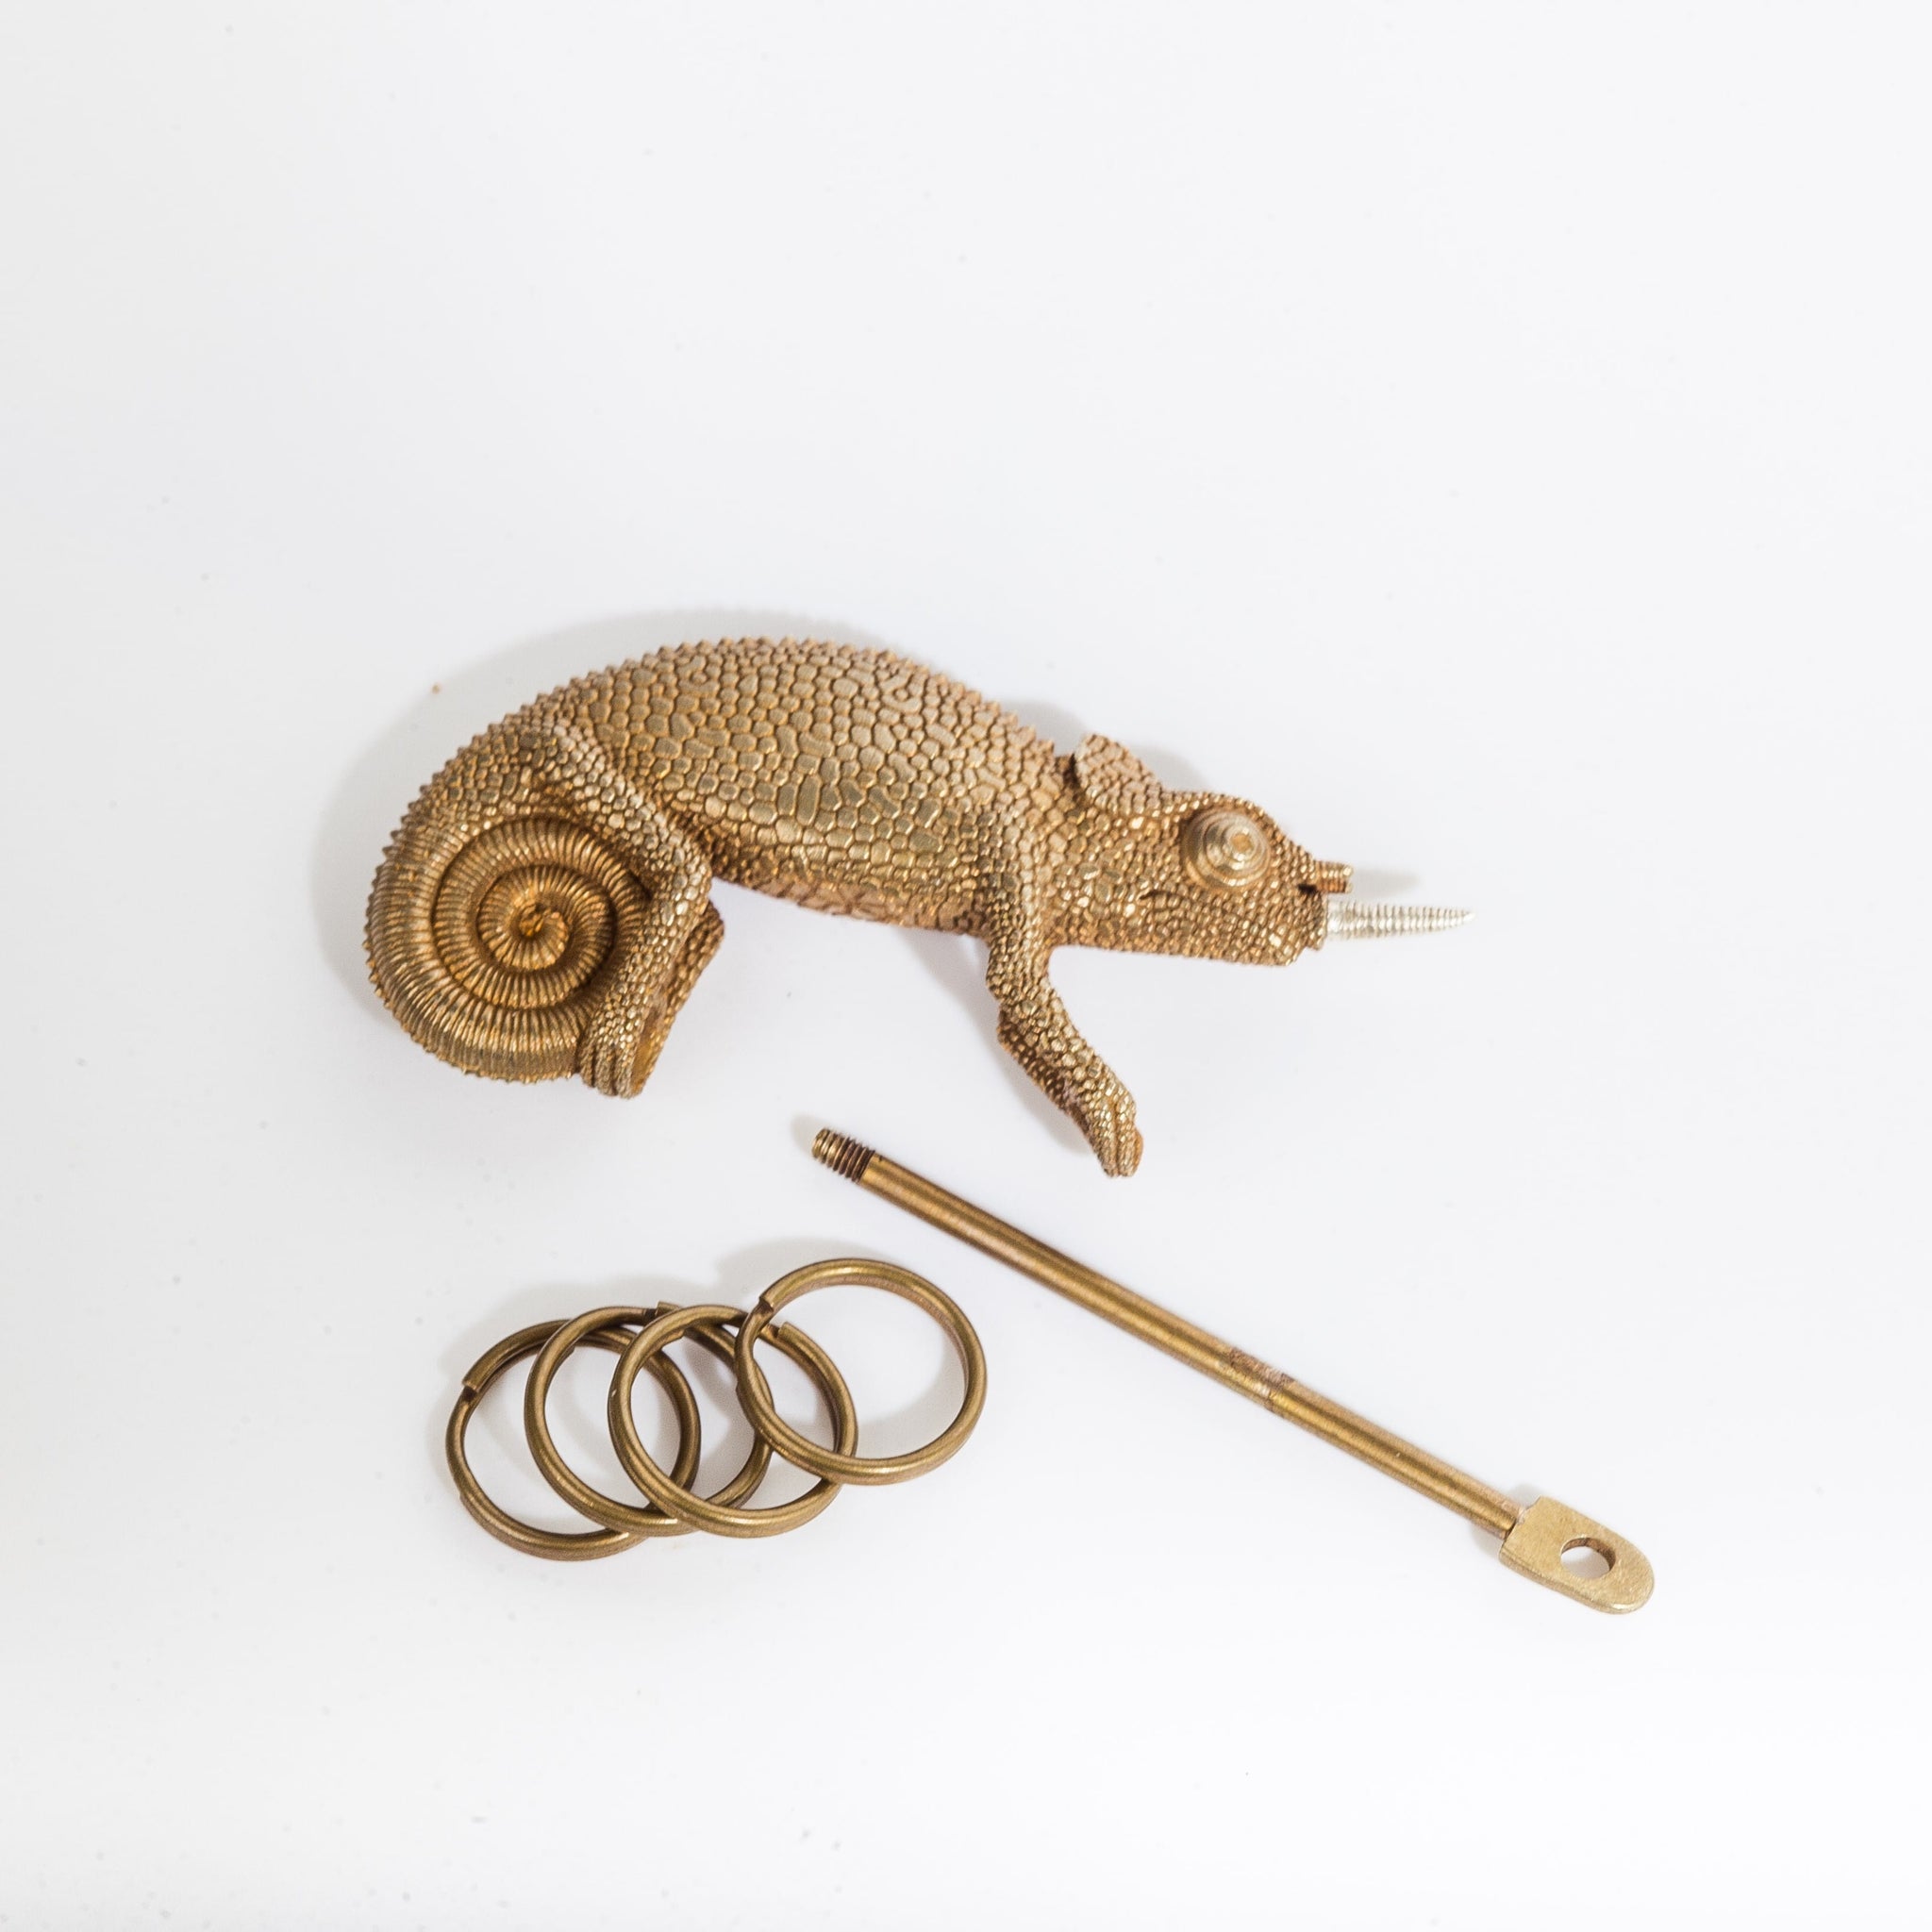 Chameleon Tape Measure – Coppertist